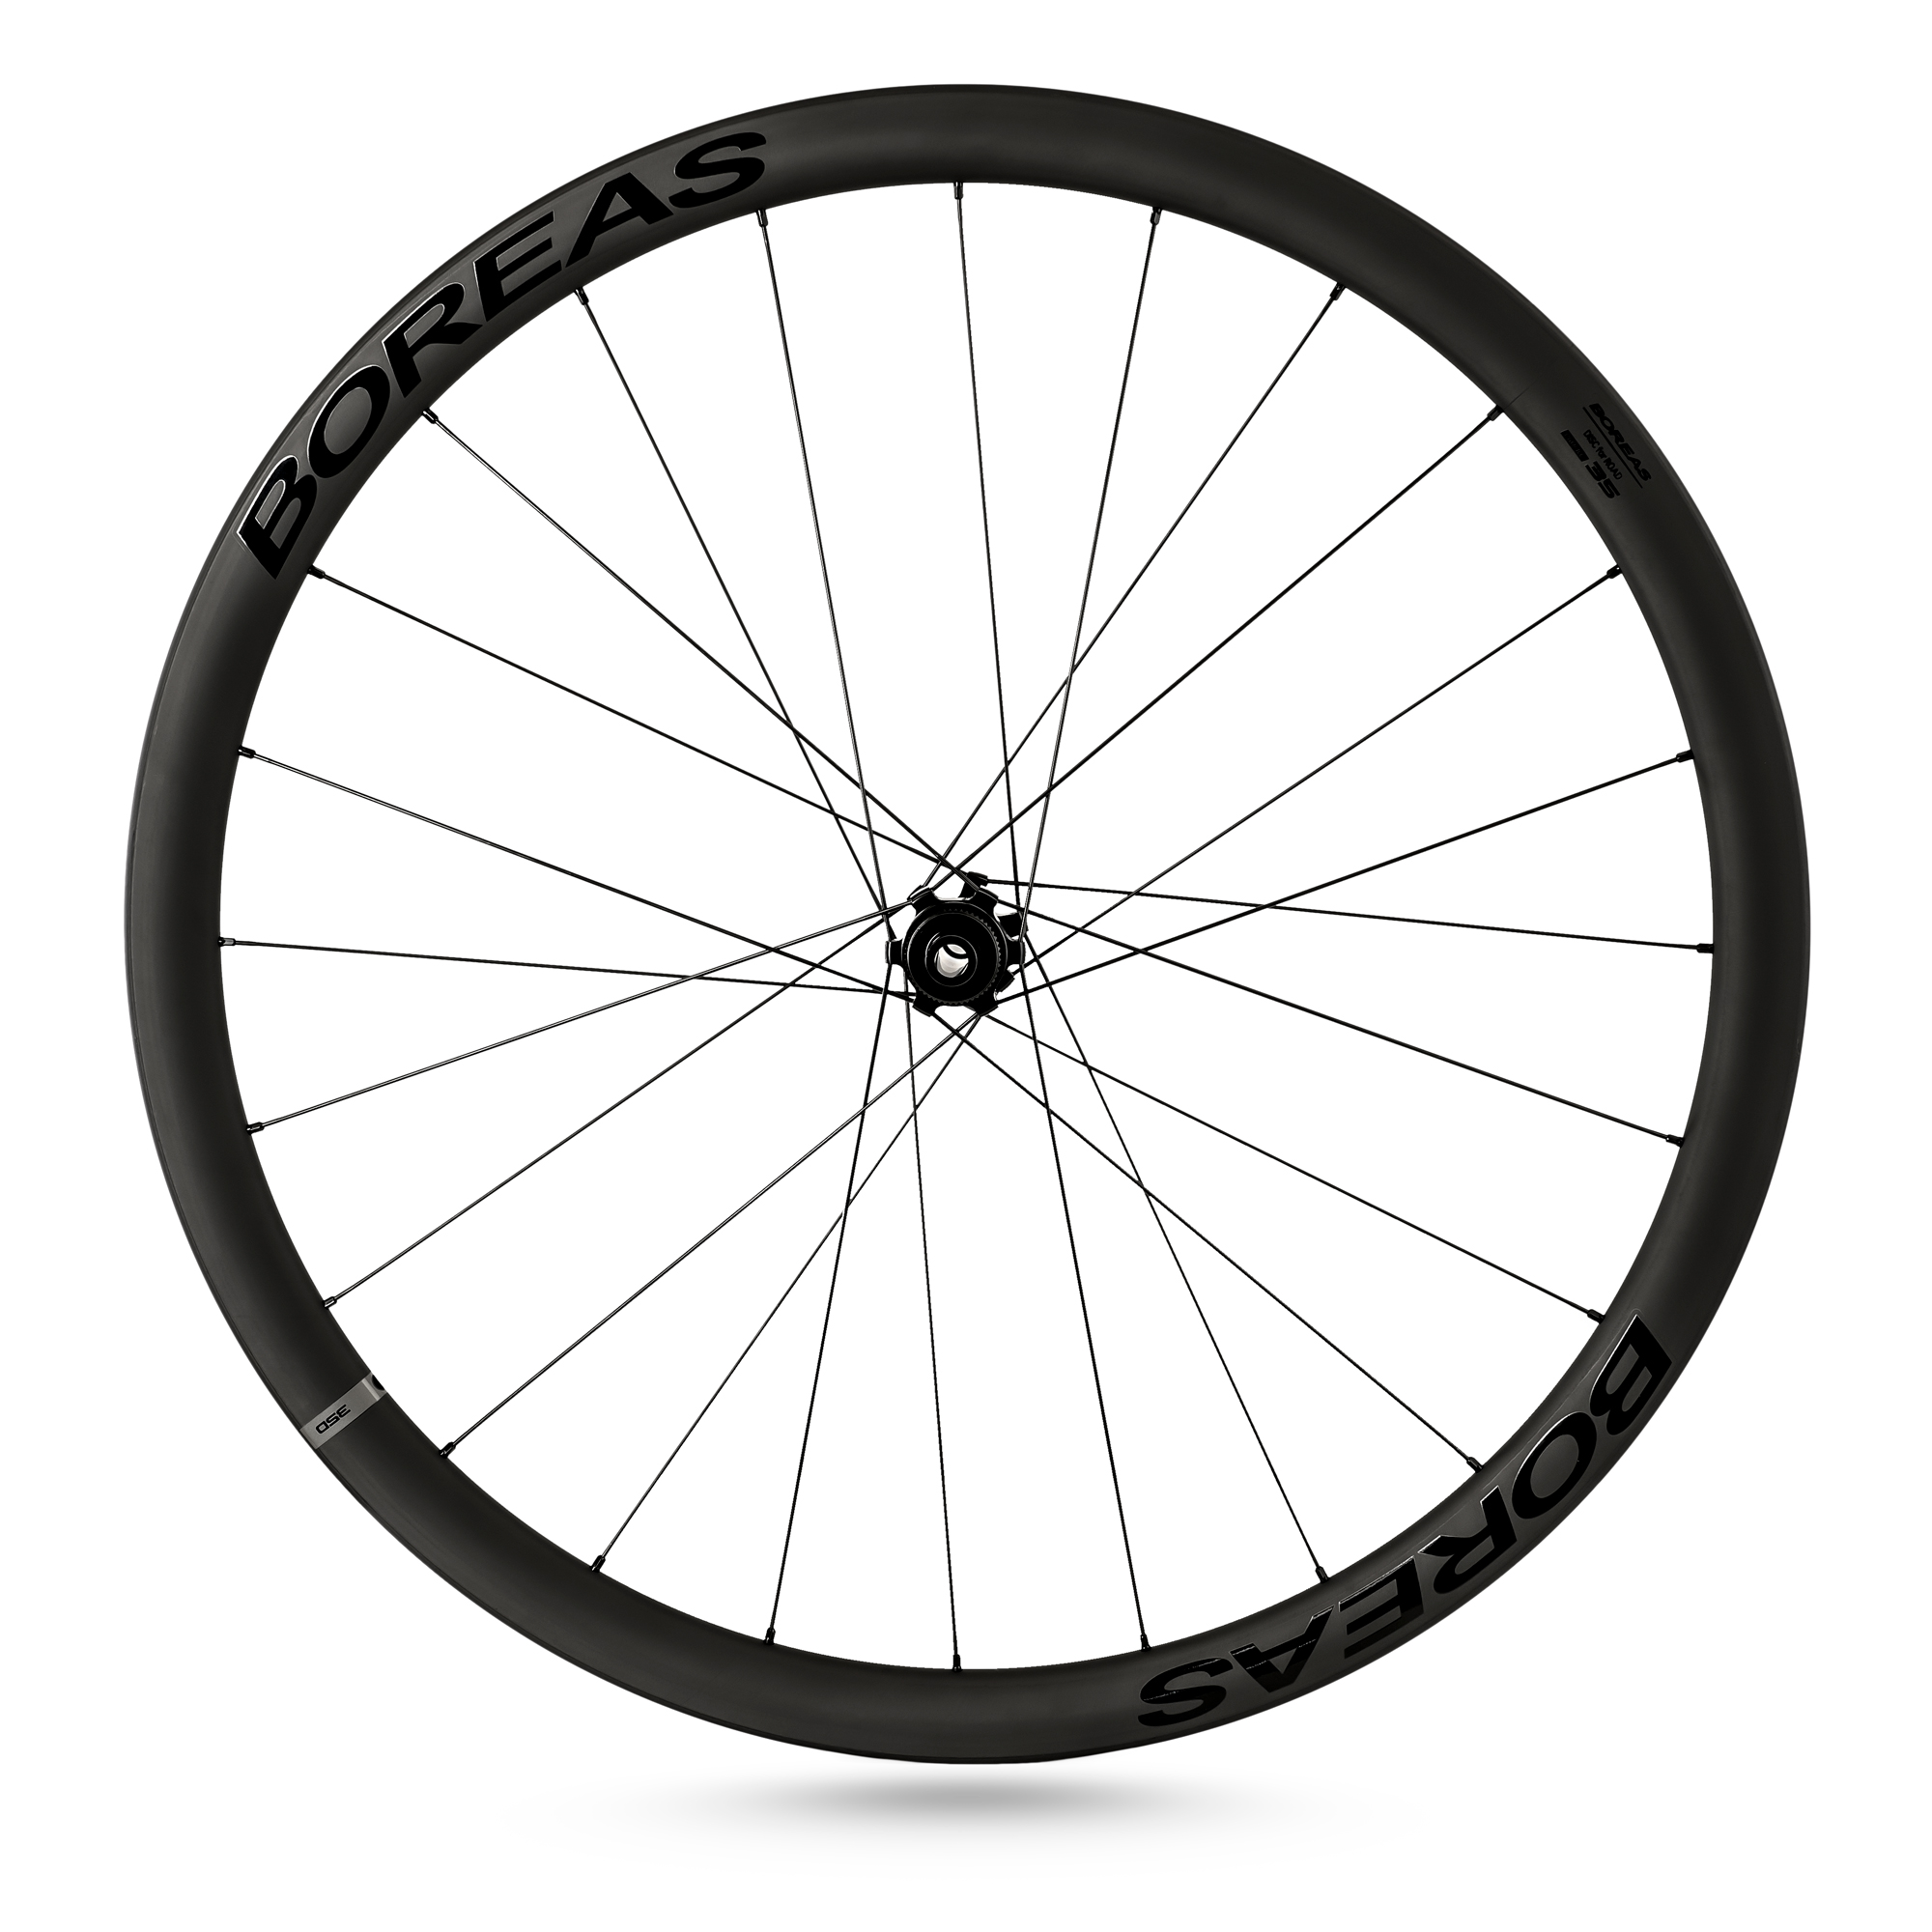 Buy CyclingDeal BOREAS Carbon Fiber Road Bike Wheels 700C Clincher